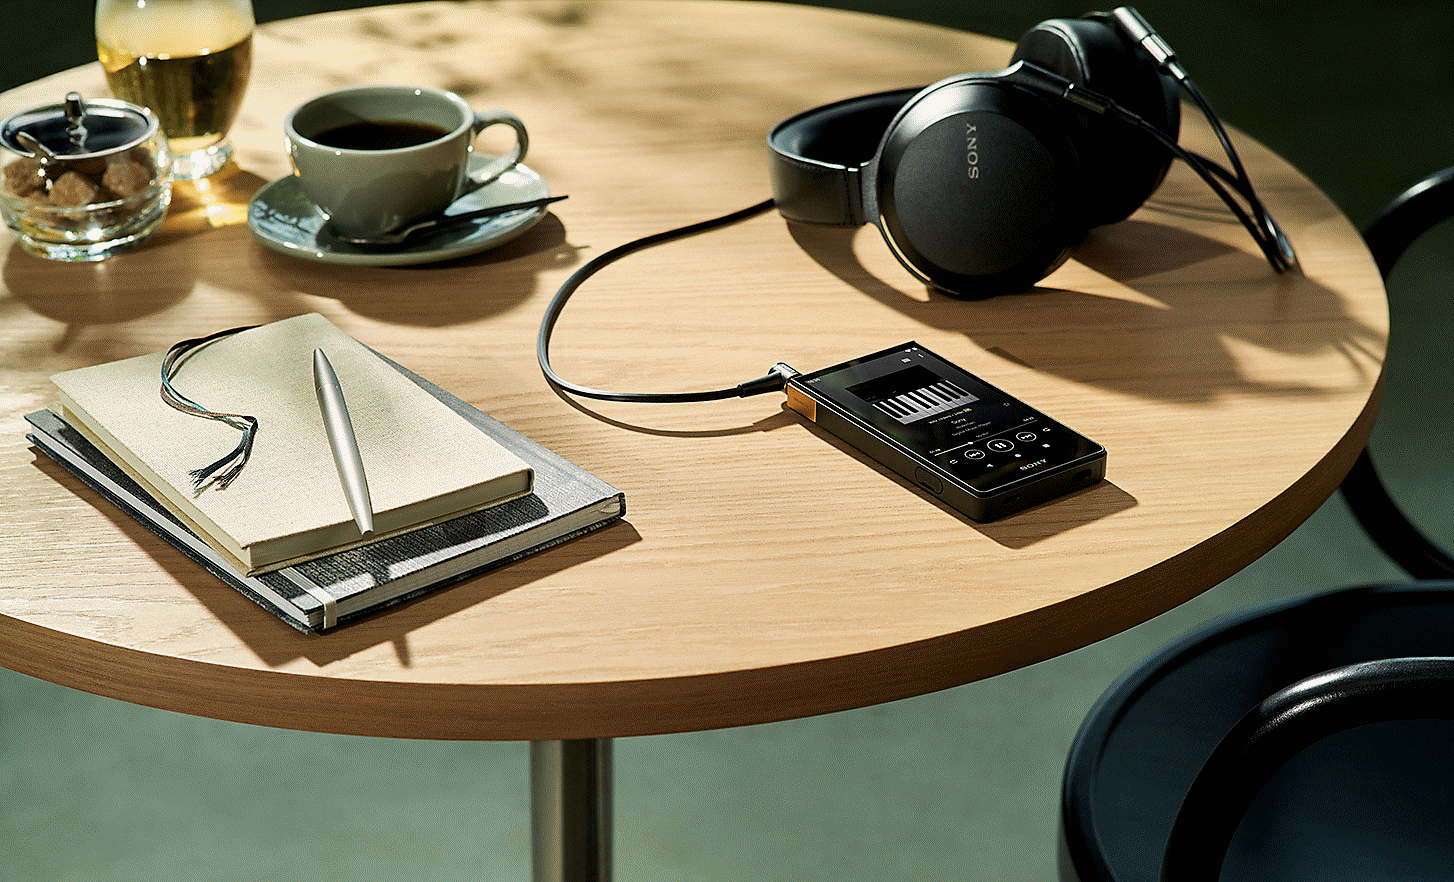 NW-ZX707 和 Sony 耳機置於桌上的影像。